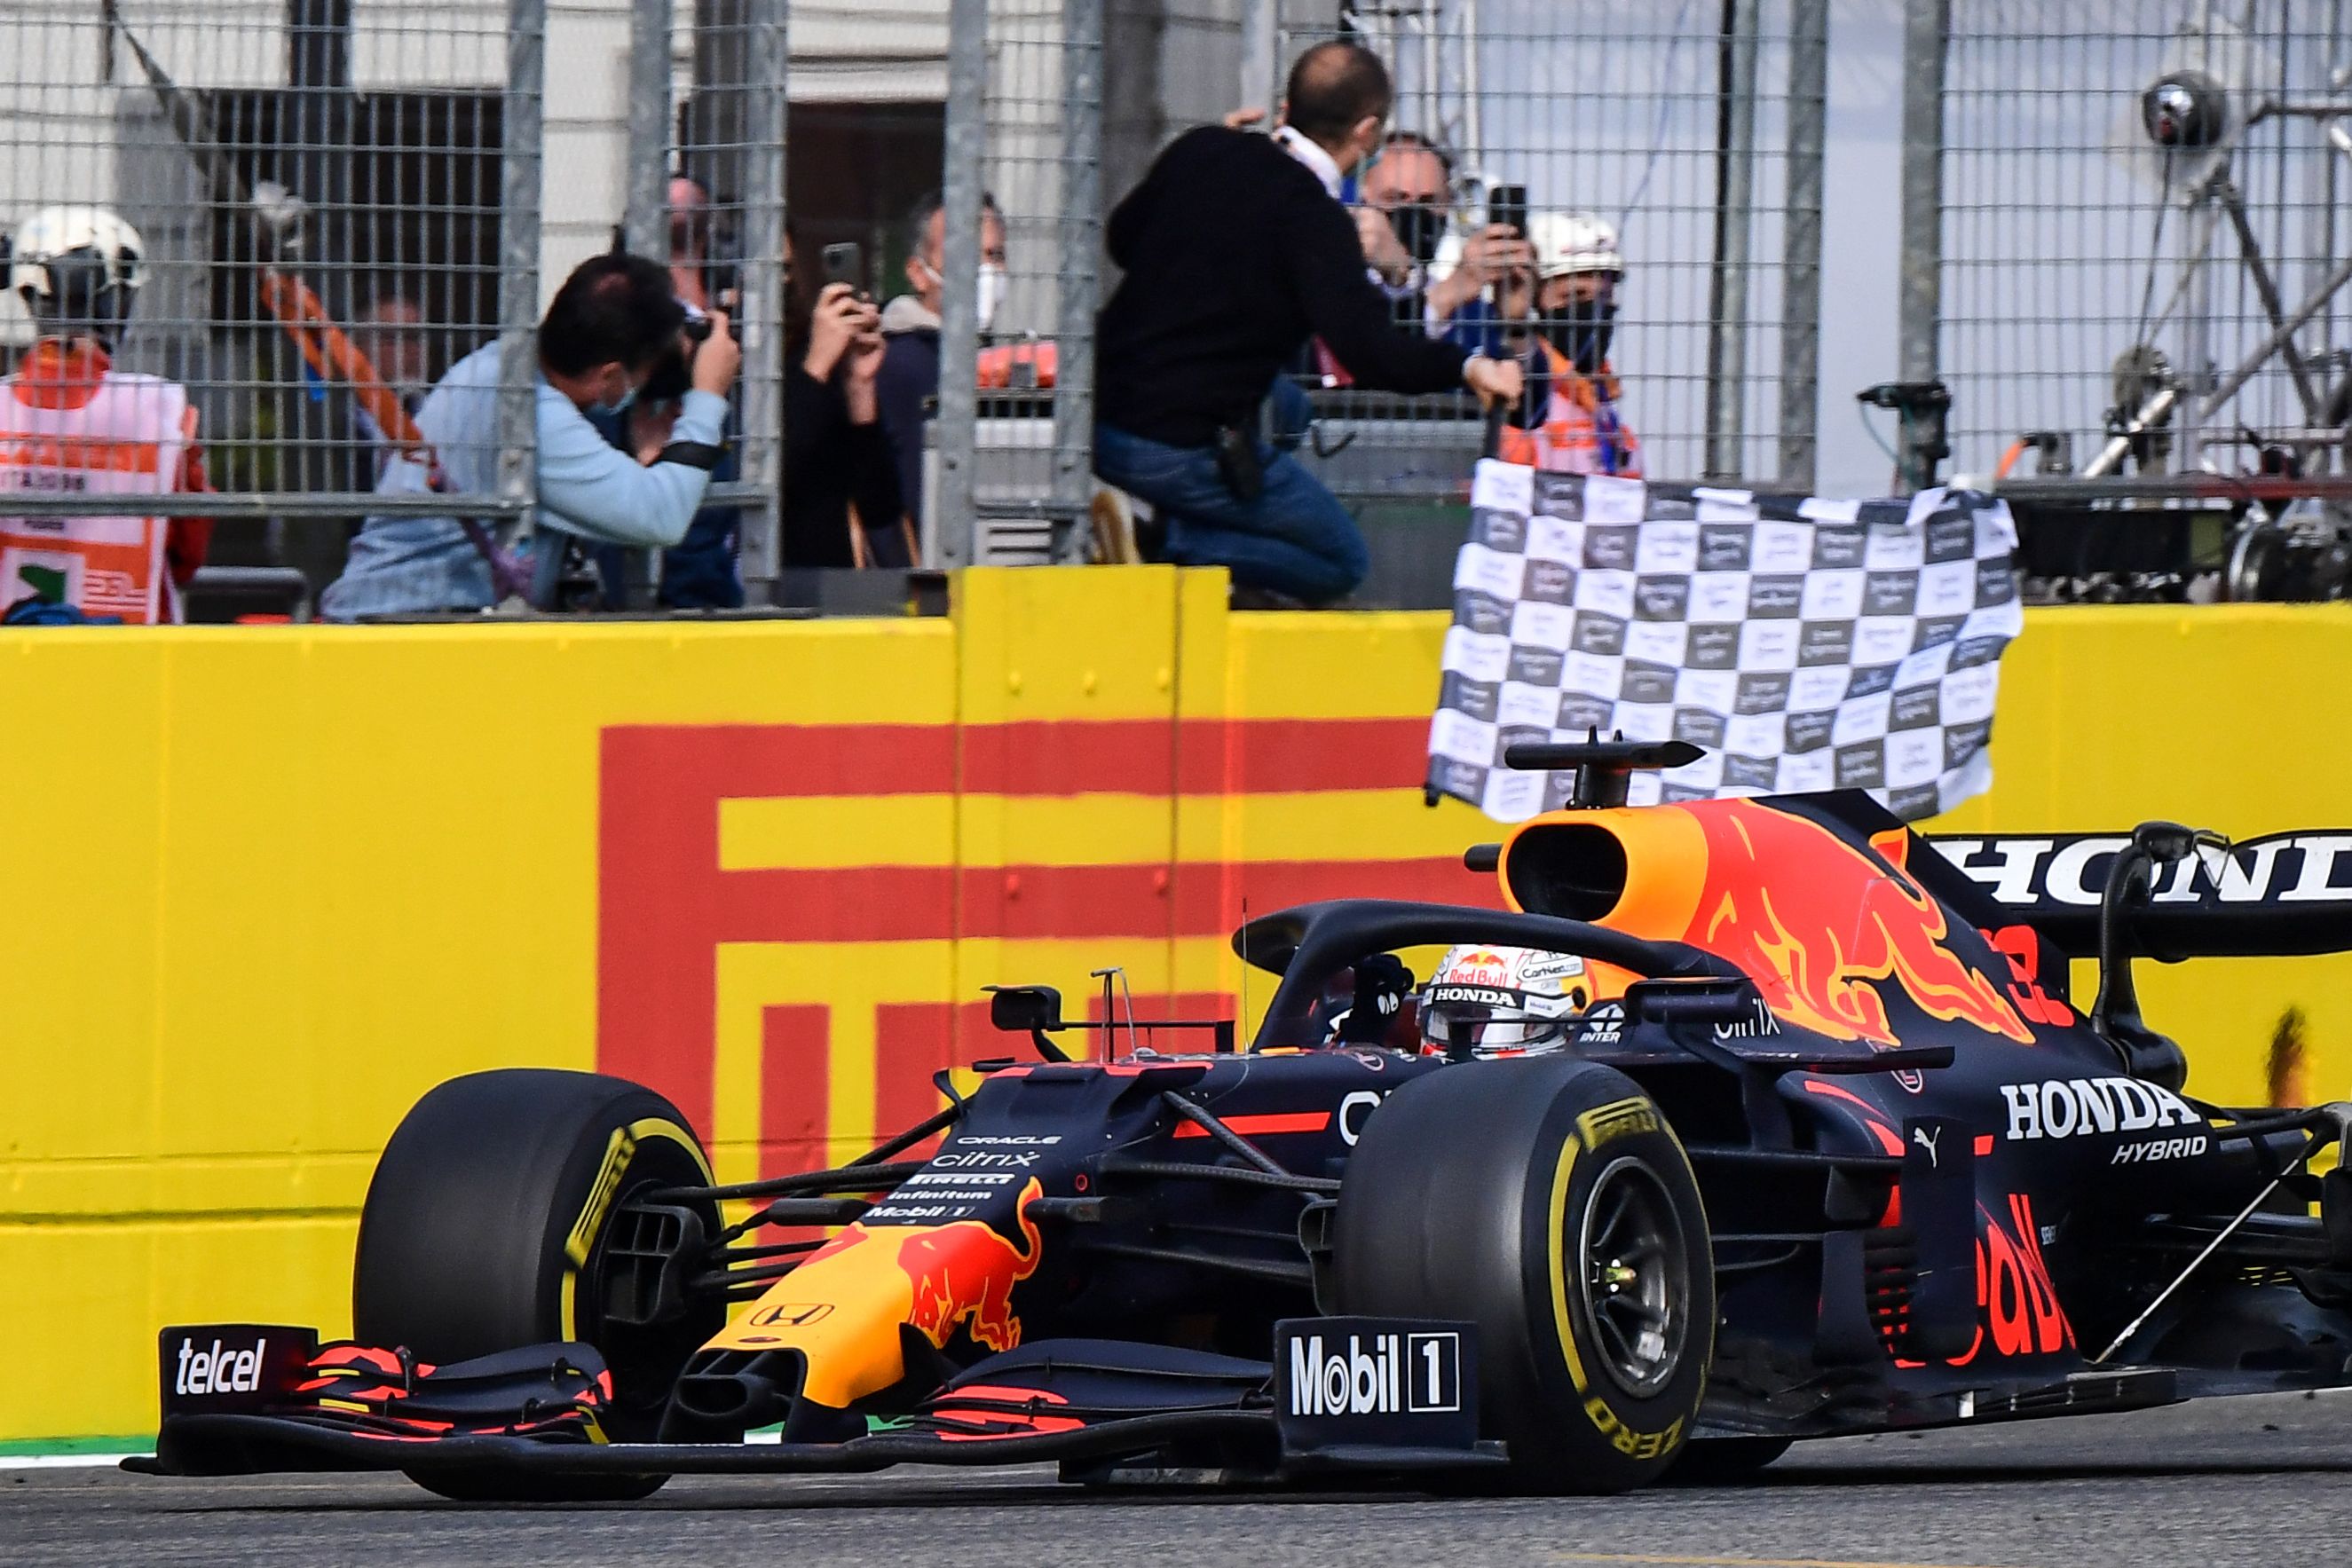 Max Verstappen en el momento que cruza en primer lugar en el GP  de Imola por delante de Hamilton. (Foto Prensa Libre: AFP)